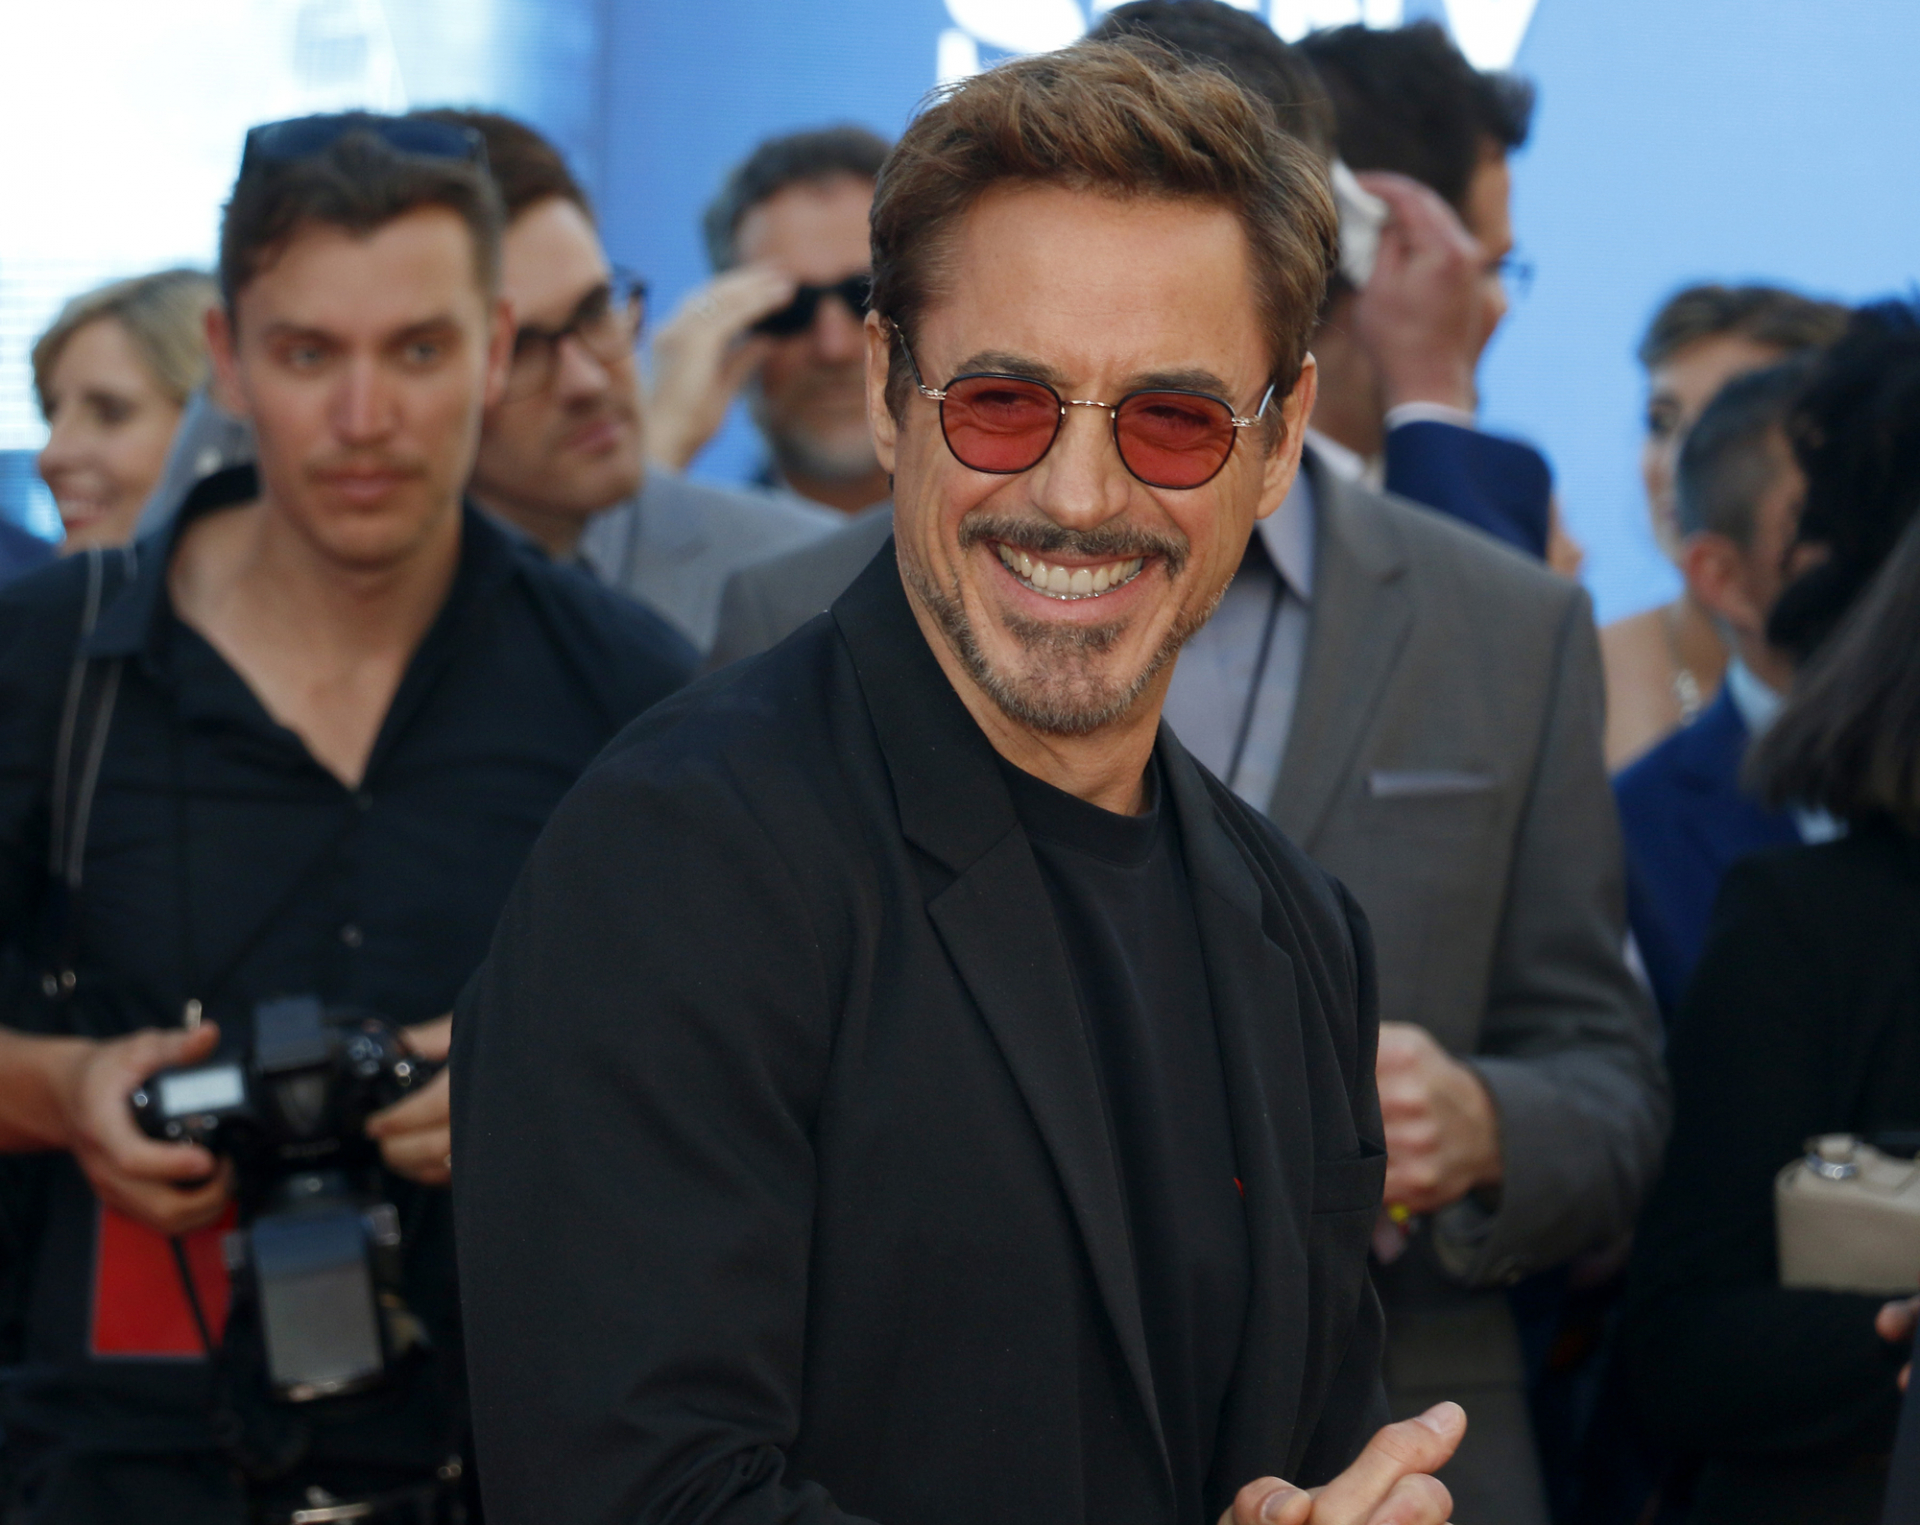 17 éve mondta ki a boldogító igent Robert Downey Jr.